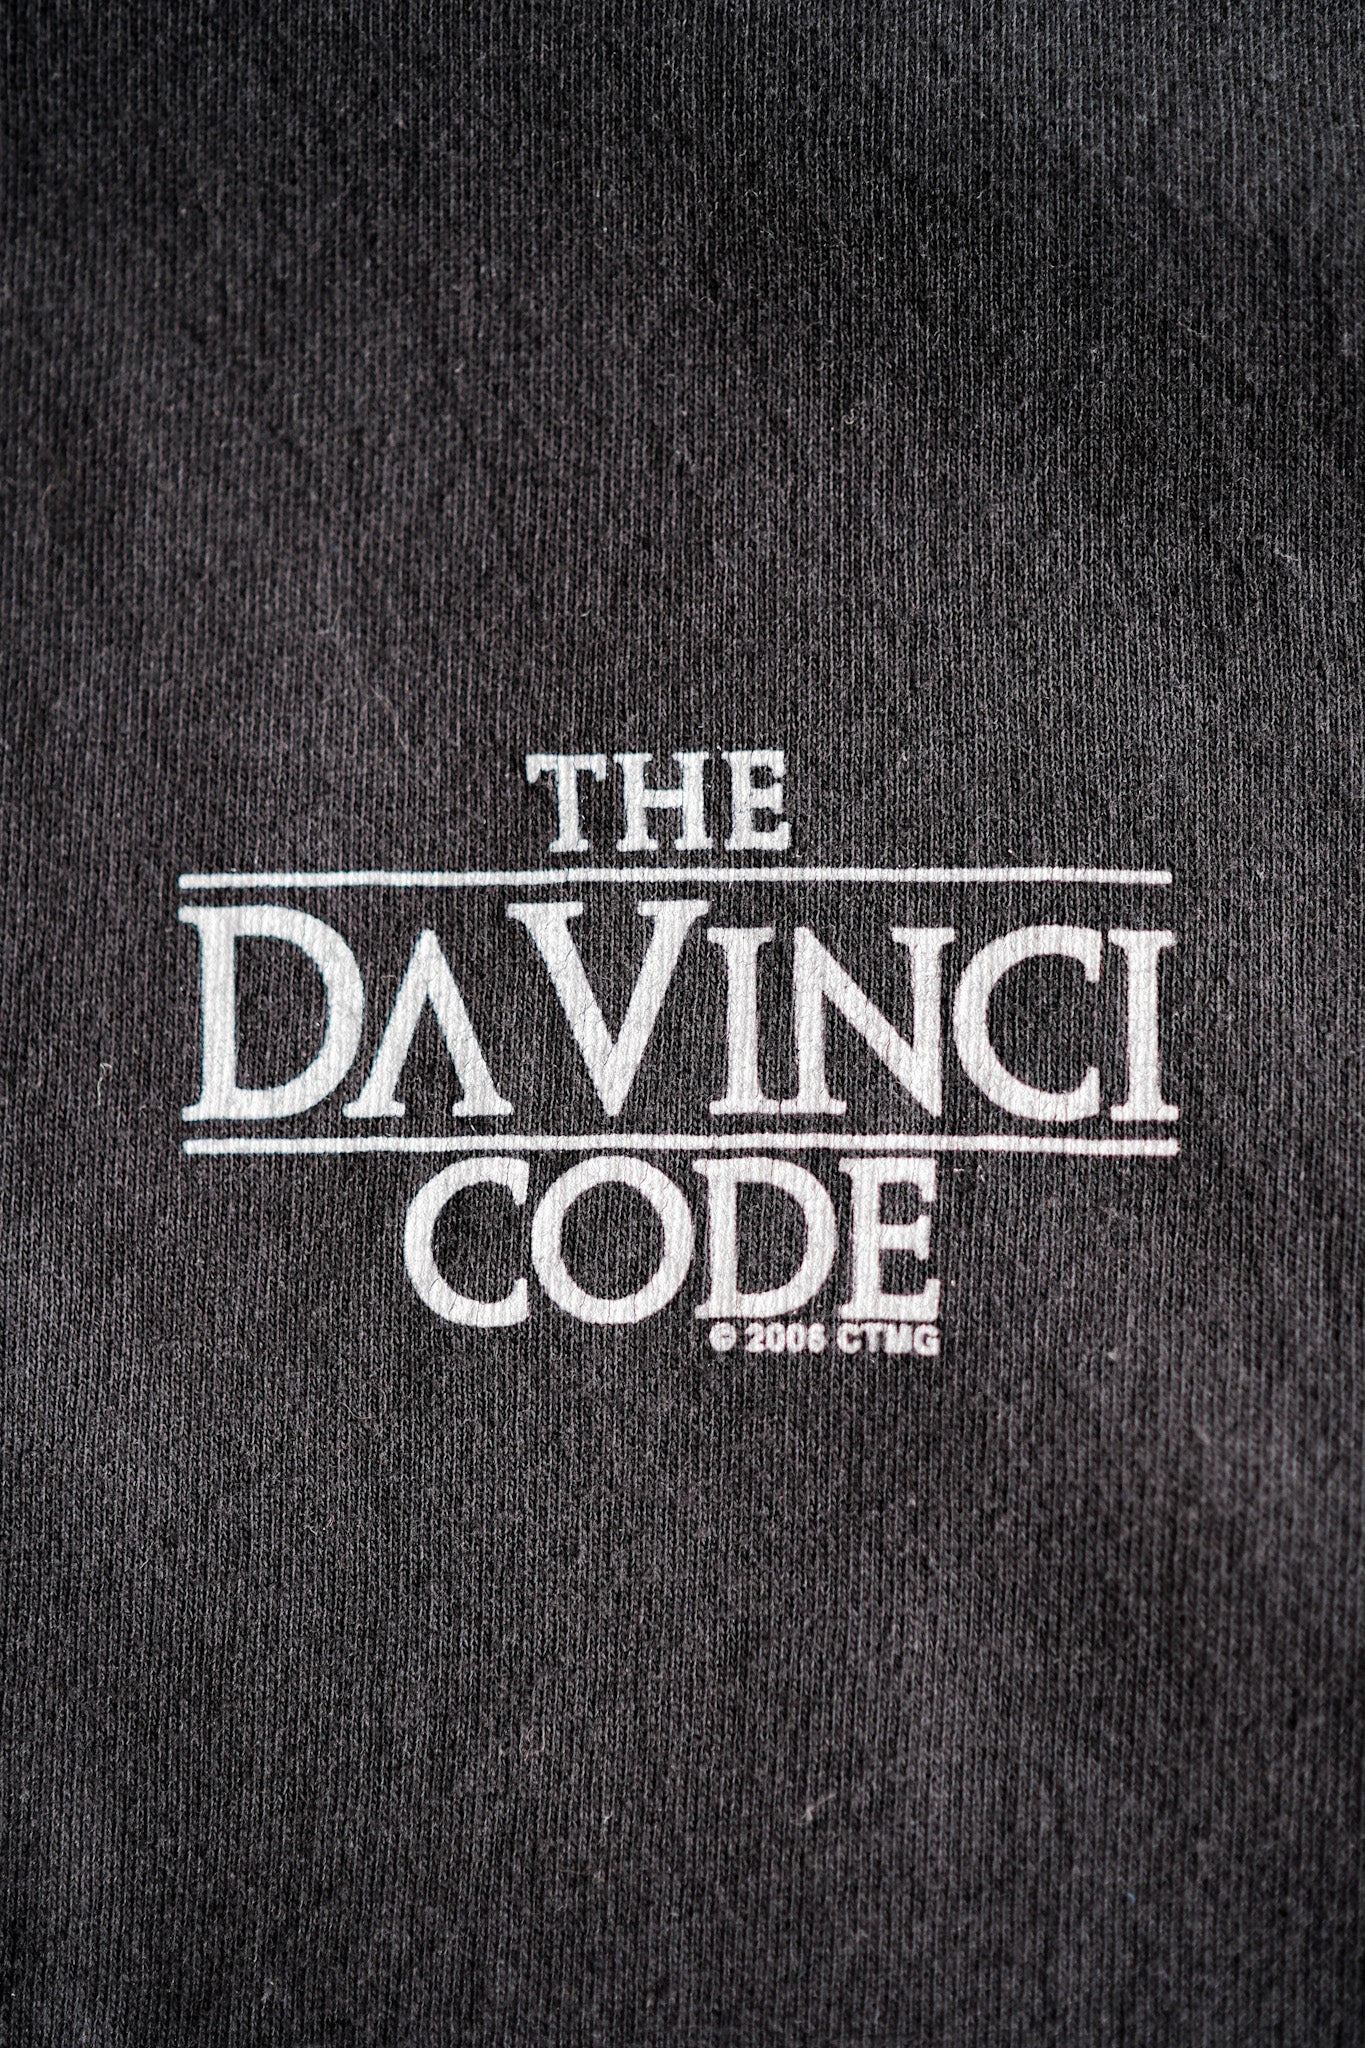 【~00's】Vintage Movie Print T-shirt Size.M "The Da Vinci Code"